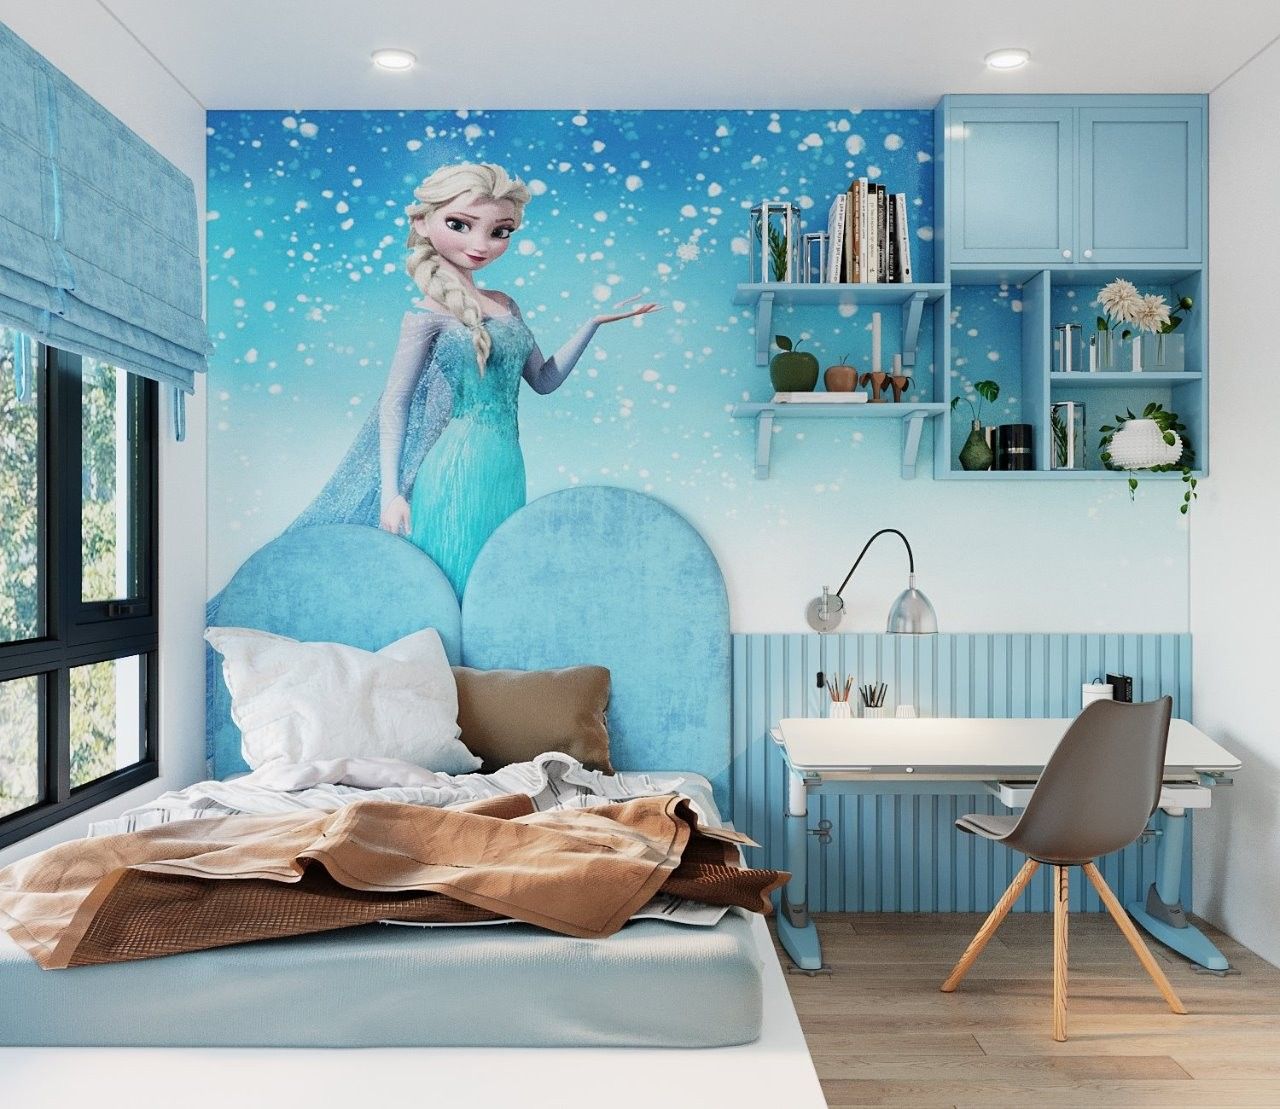 Giường ngủ công chúa Elsa với tông xanh nhẹ nhàng chủ đạo, kết hợp giấy dán tường công chúa rất sinh động 